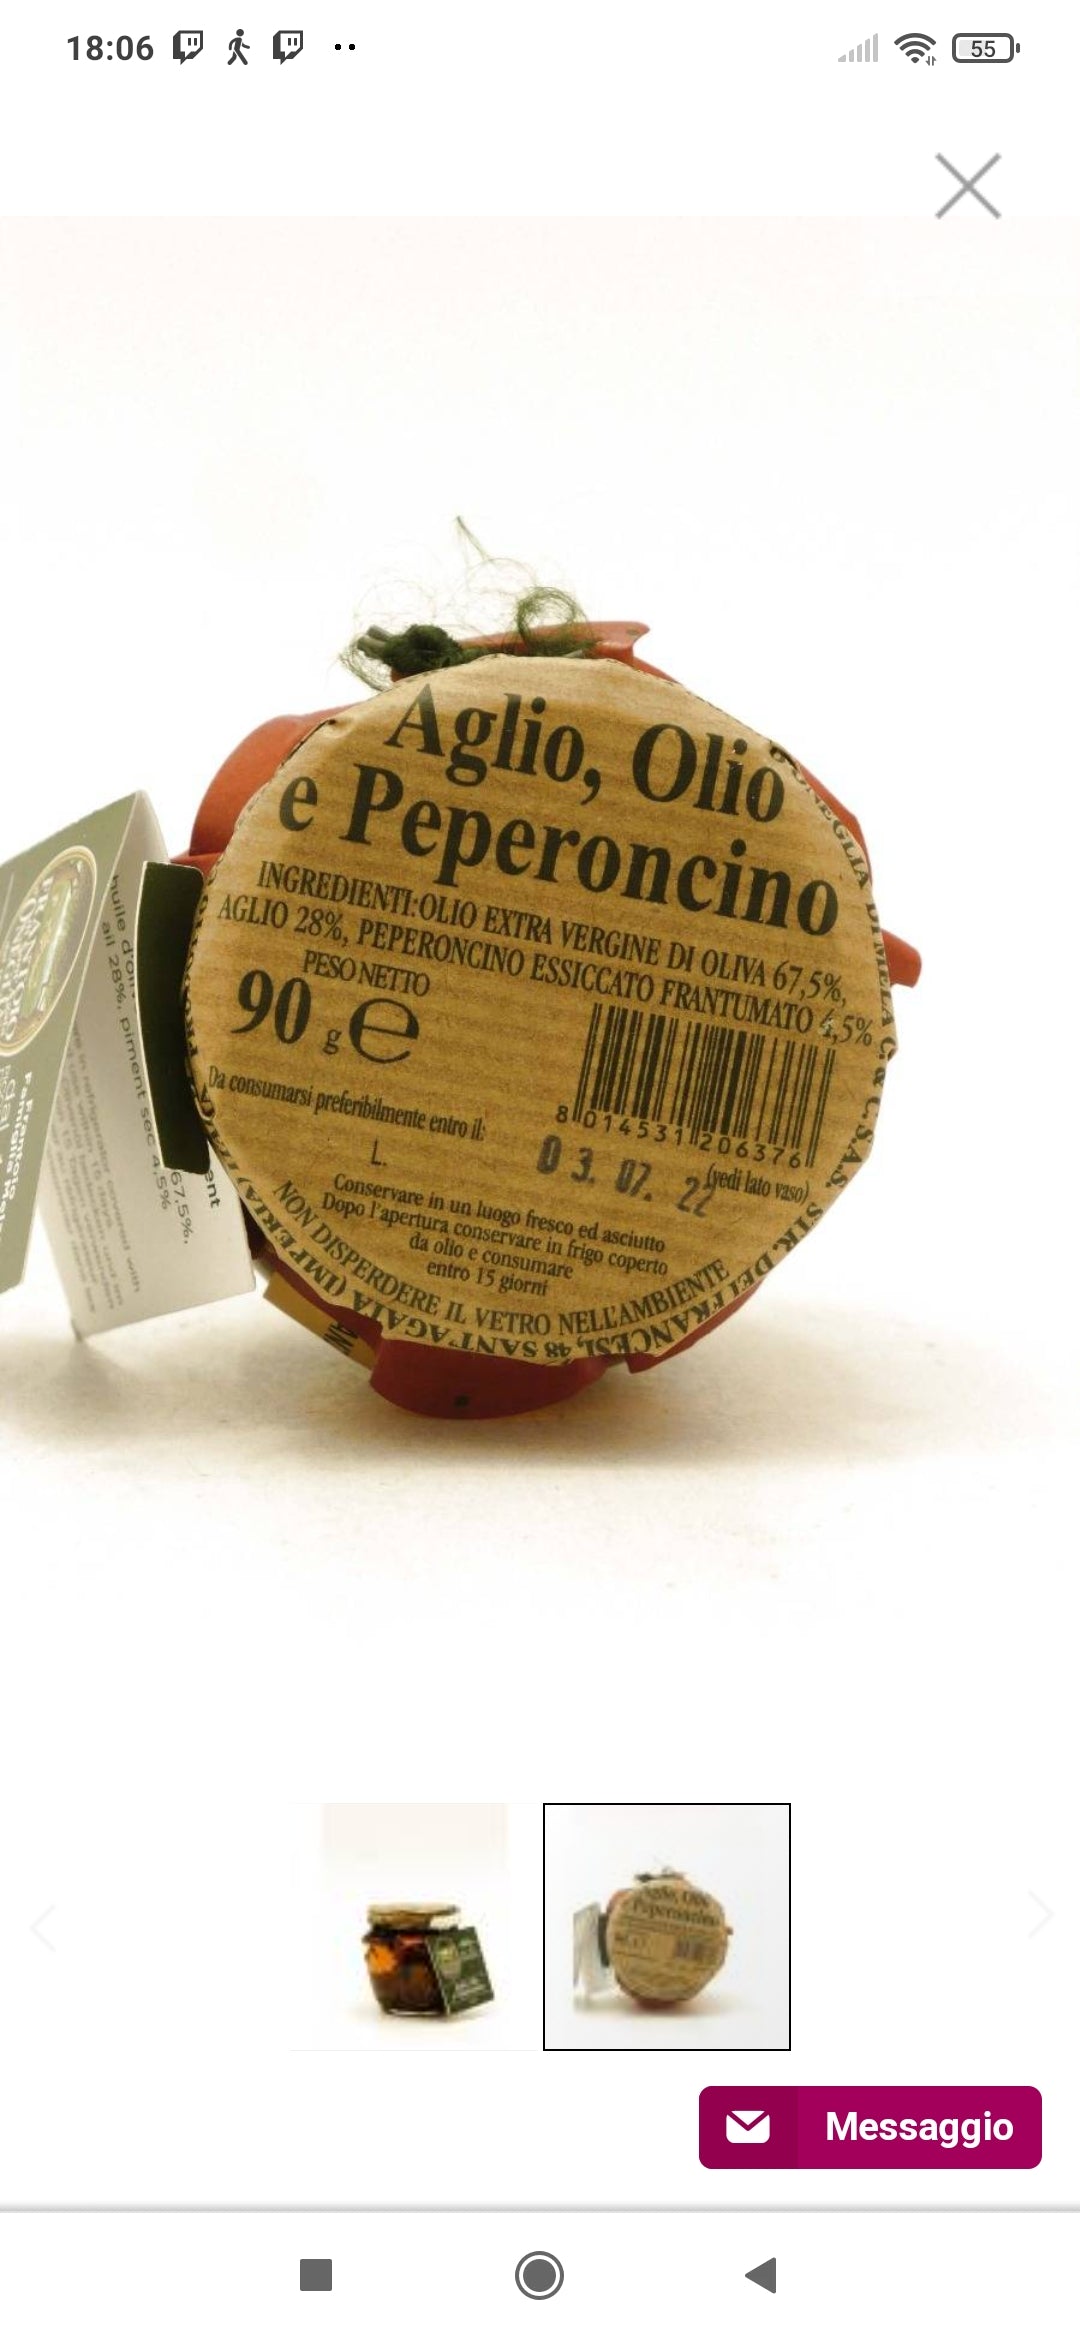 Aglio Olio e Peperoncino 90g - Frantoio di Sant’Agata d’Oneglia - Drugstore Napoli